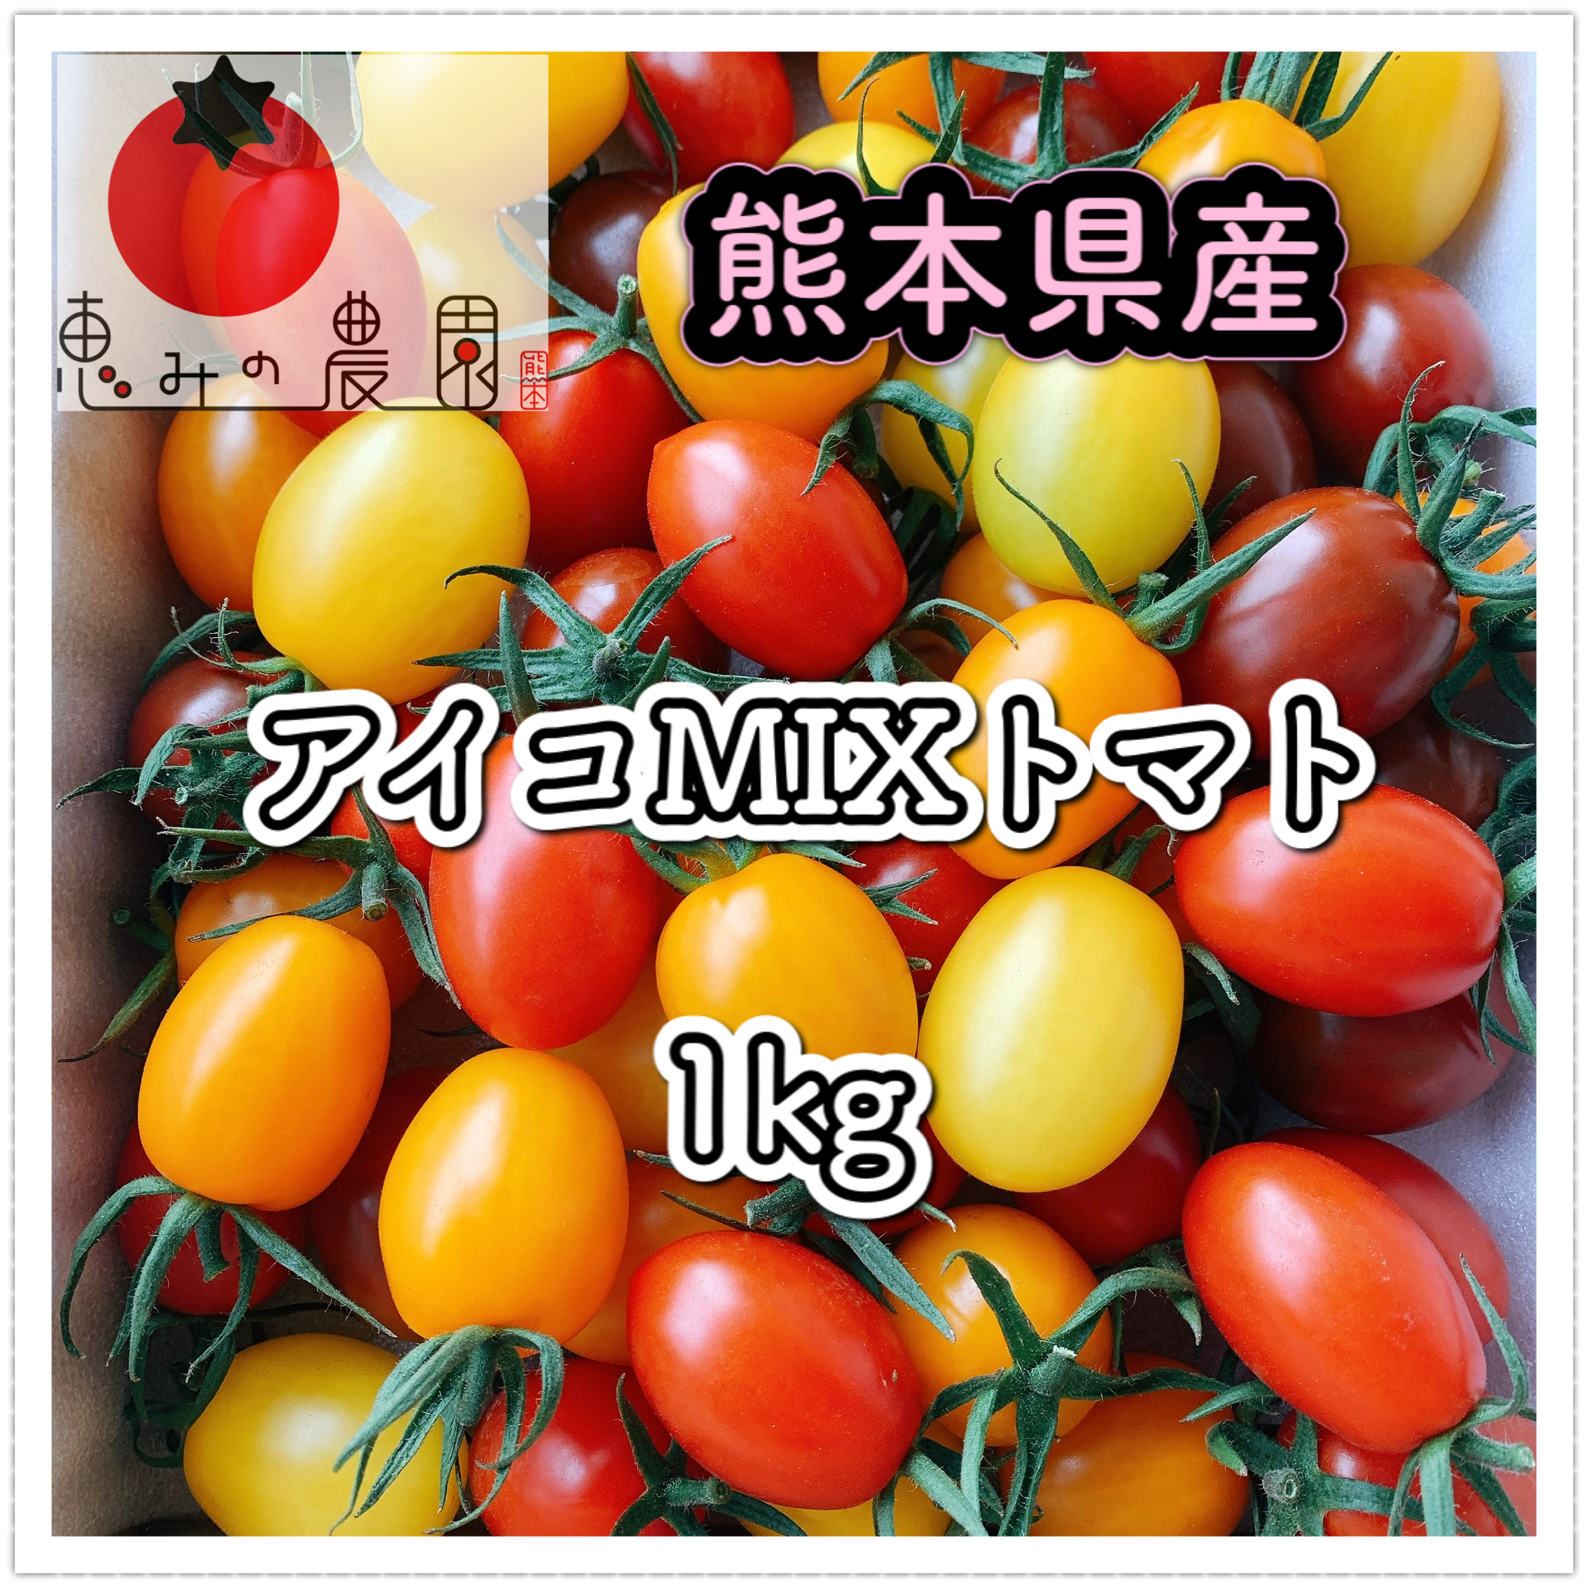 熊本県産アイコトマト6キロ